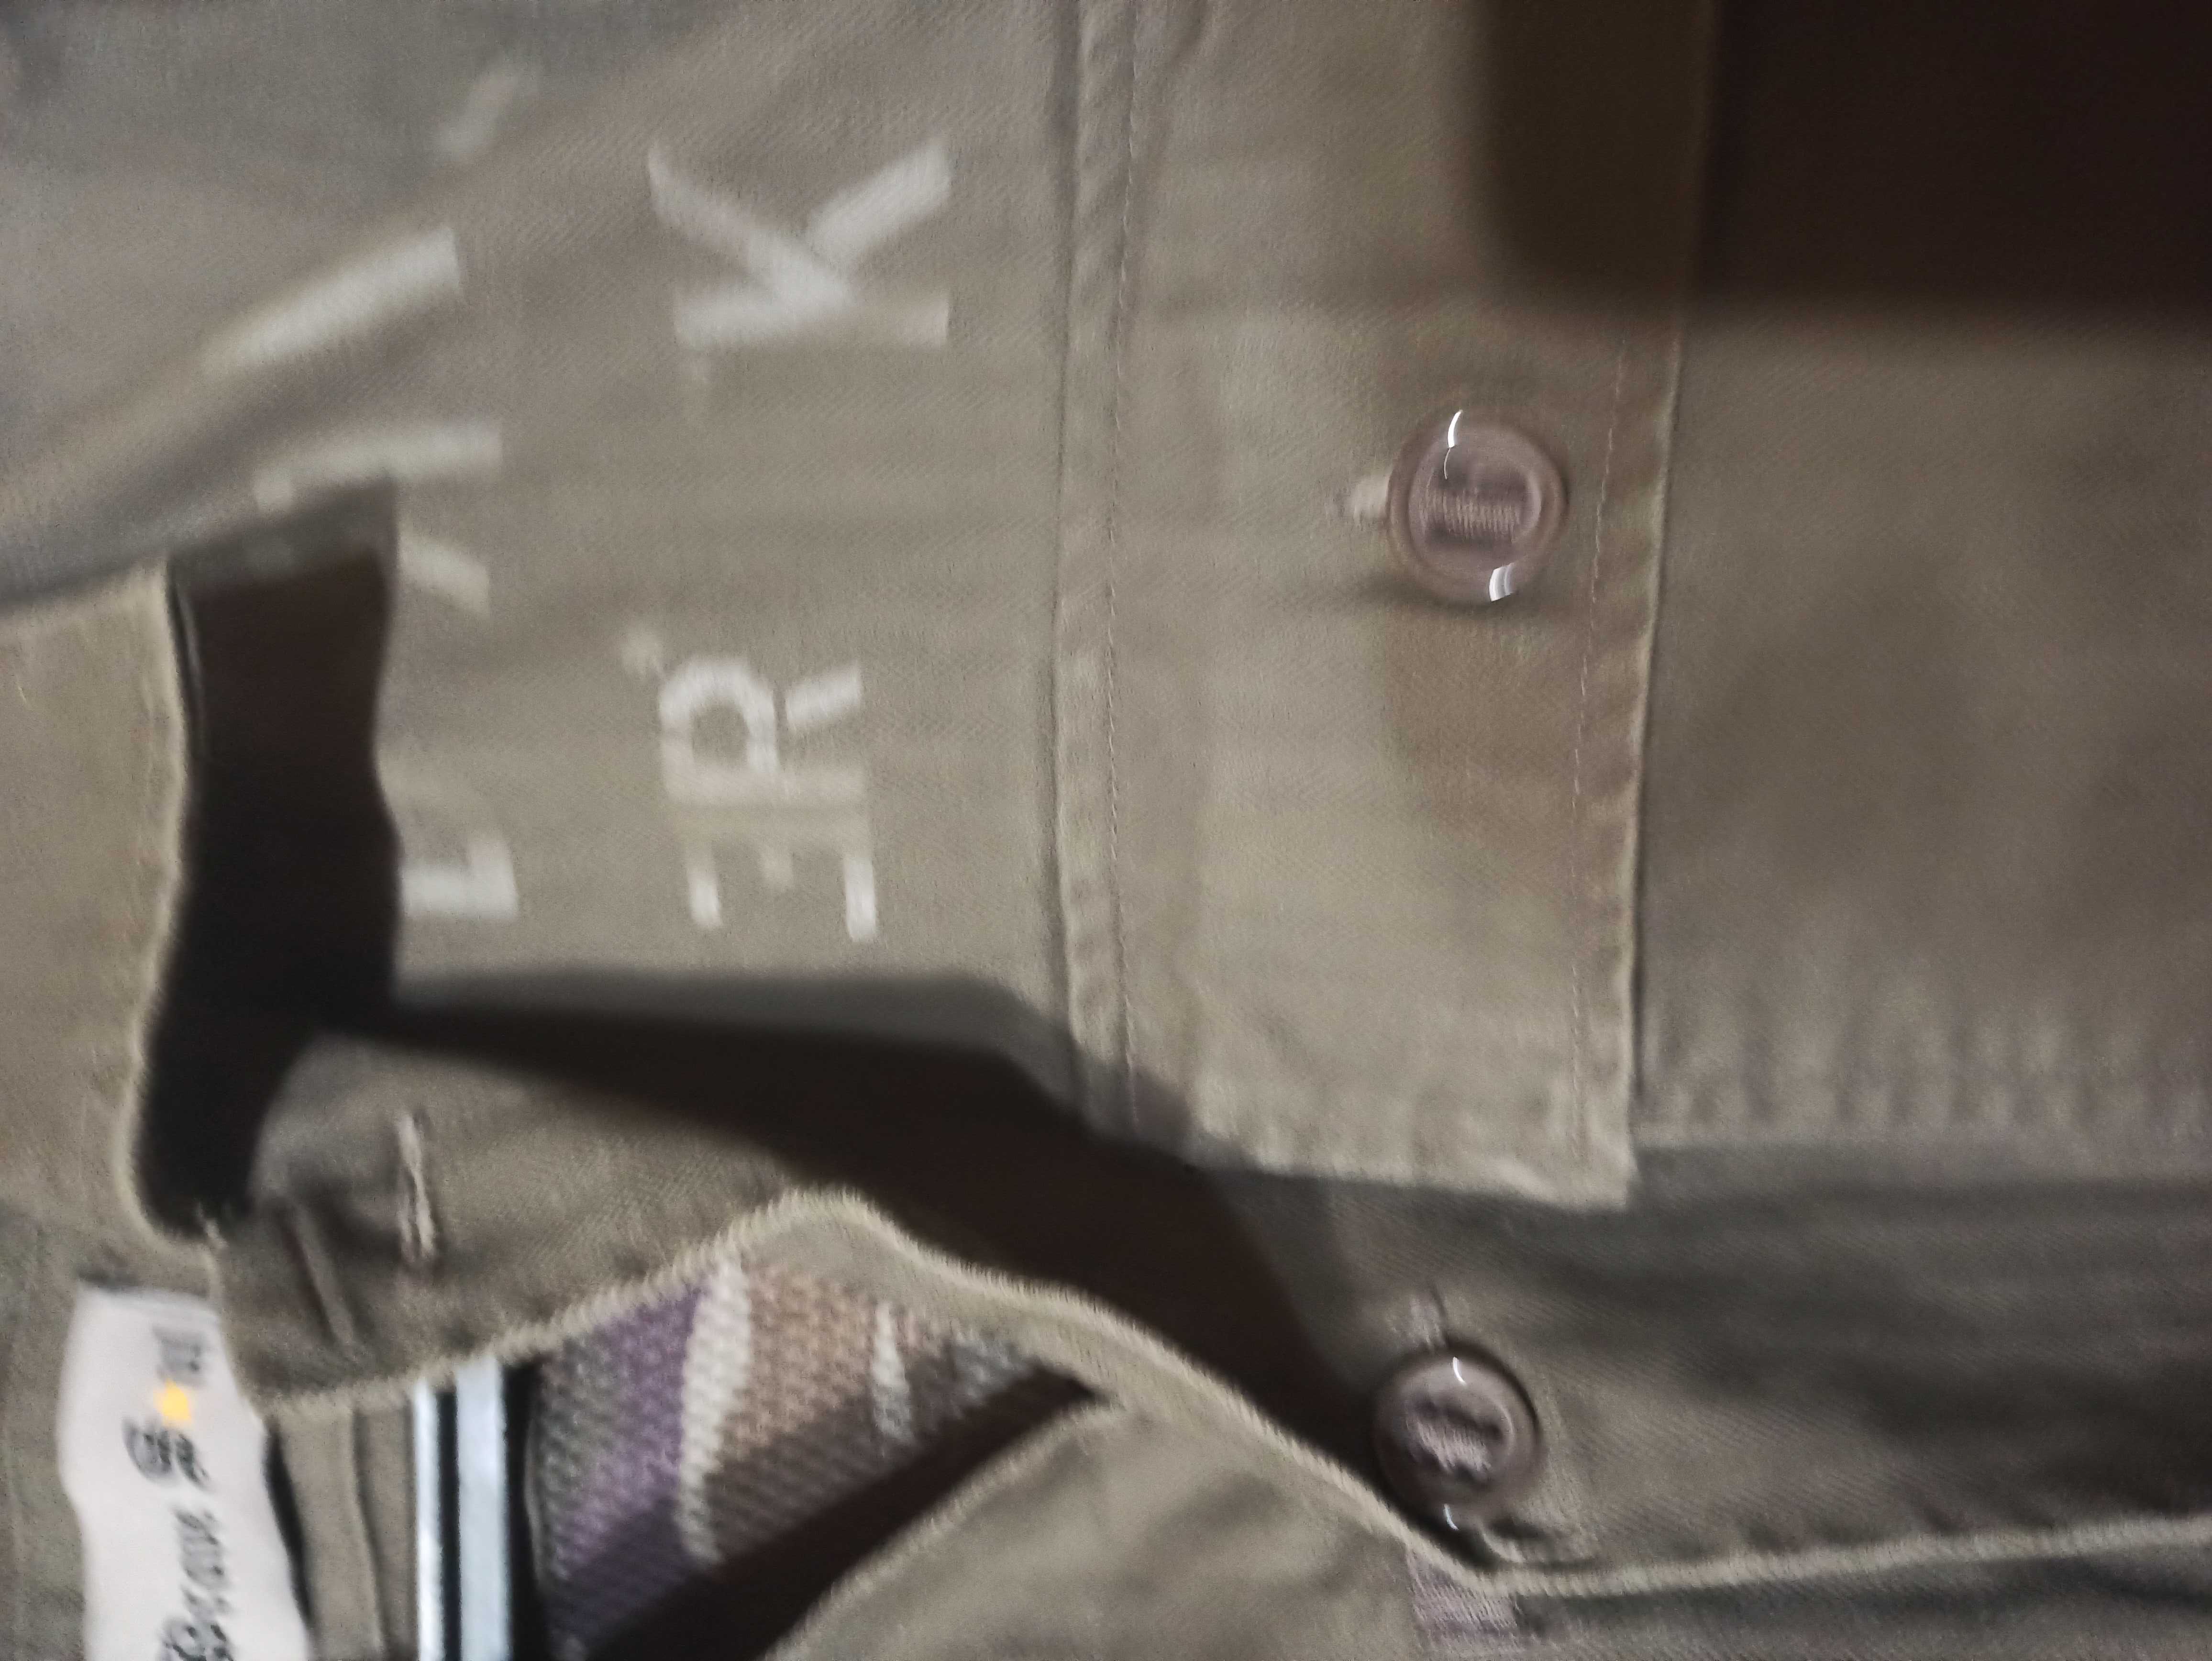 Куртка стиль милитари с подкладкой из сетки р. м